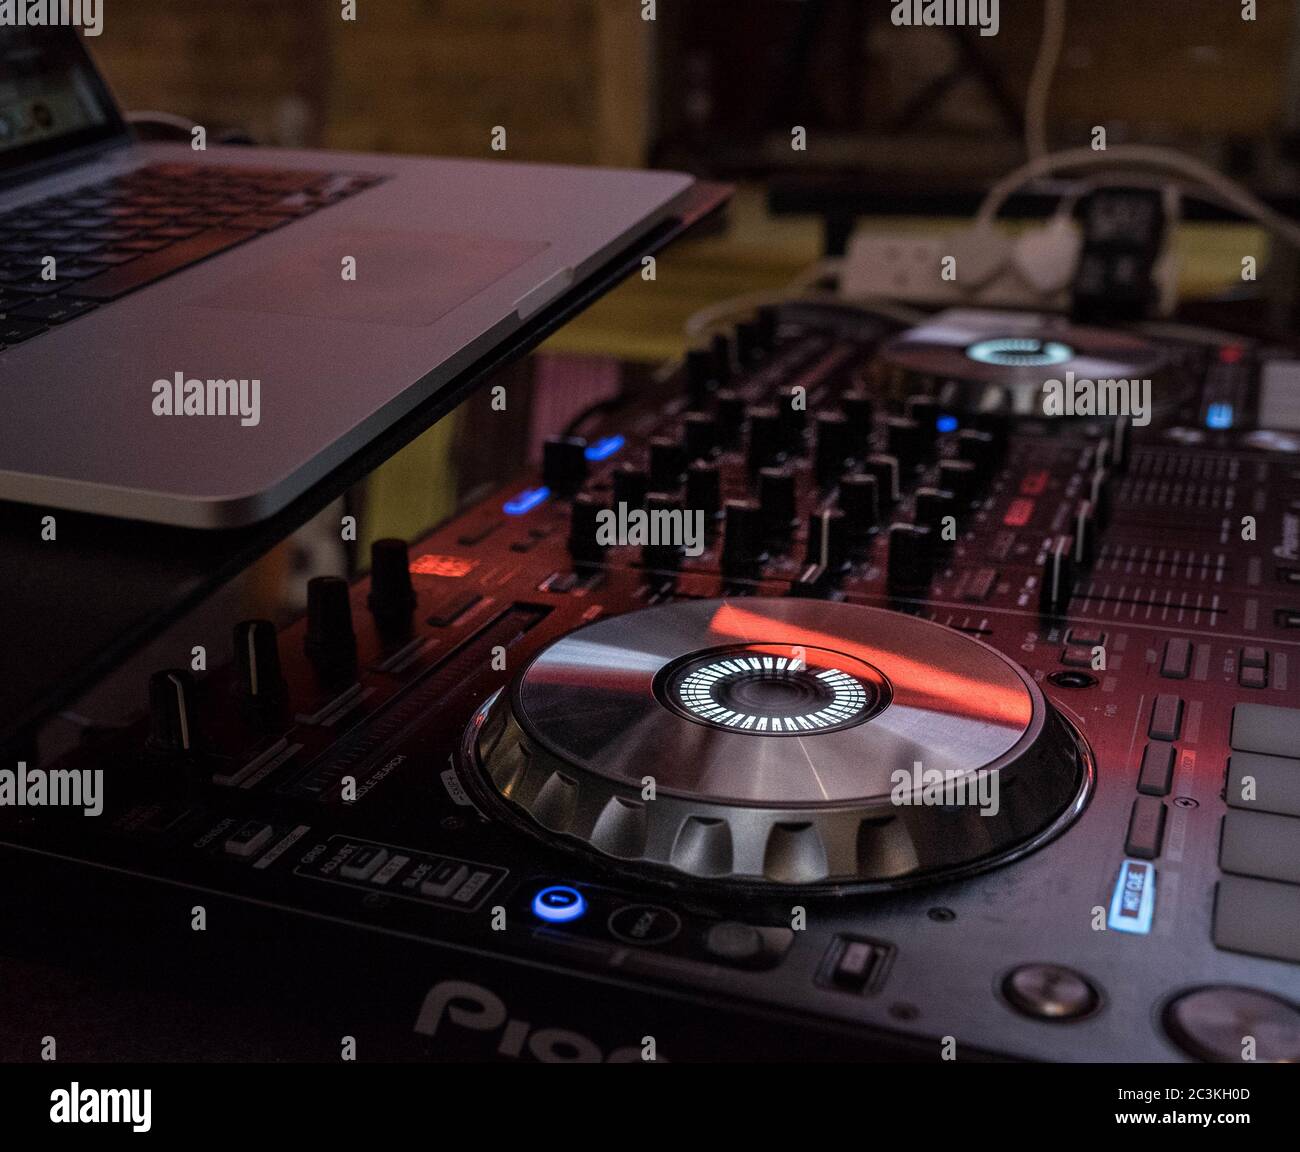 Closeup shot of a DJ mixer with a laptop on top Stock Photo - Alamy